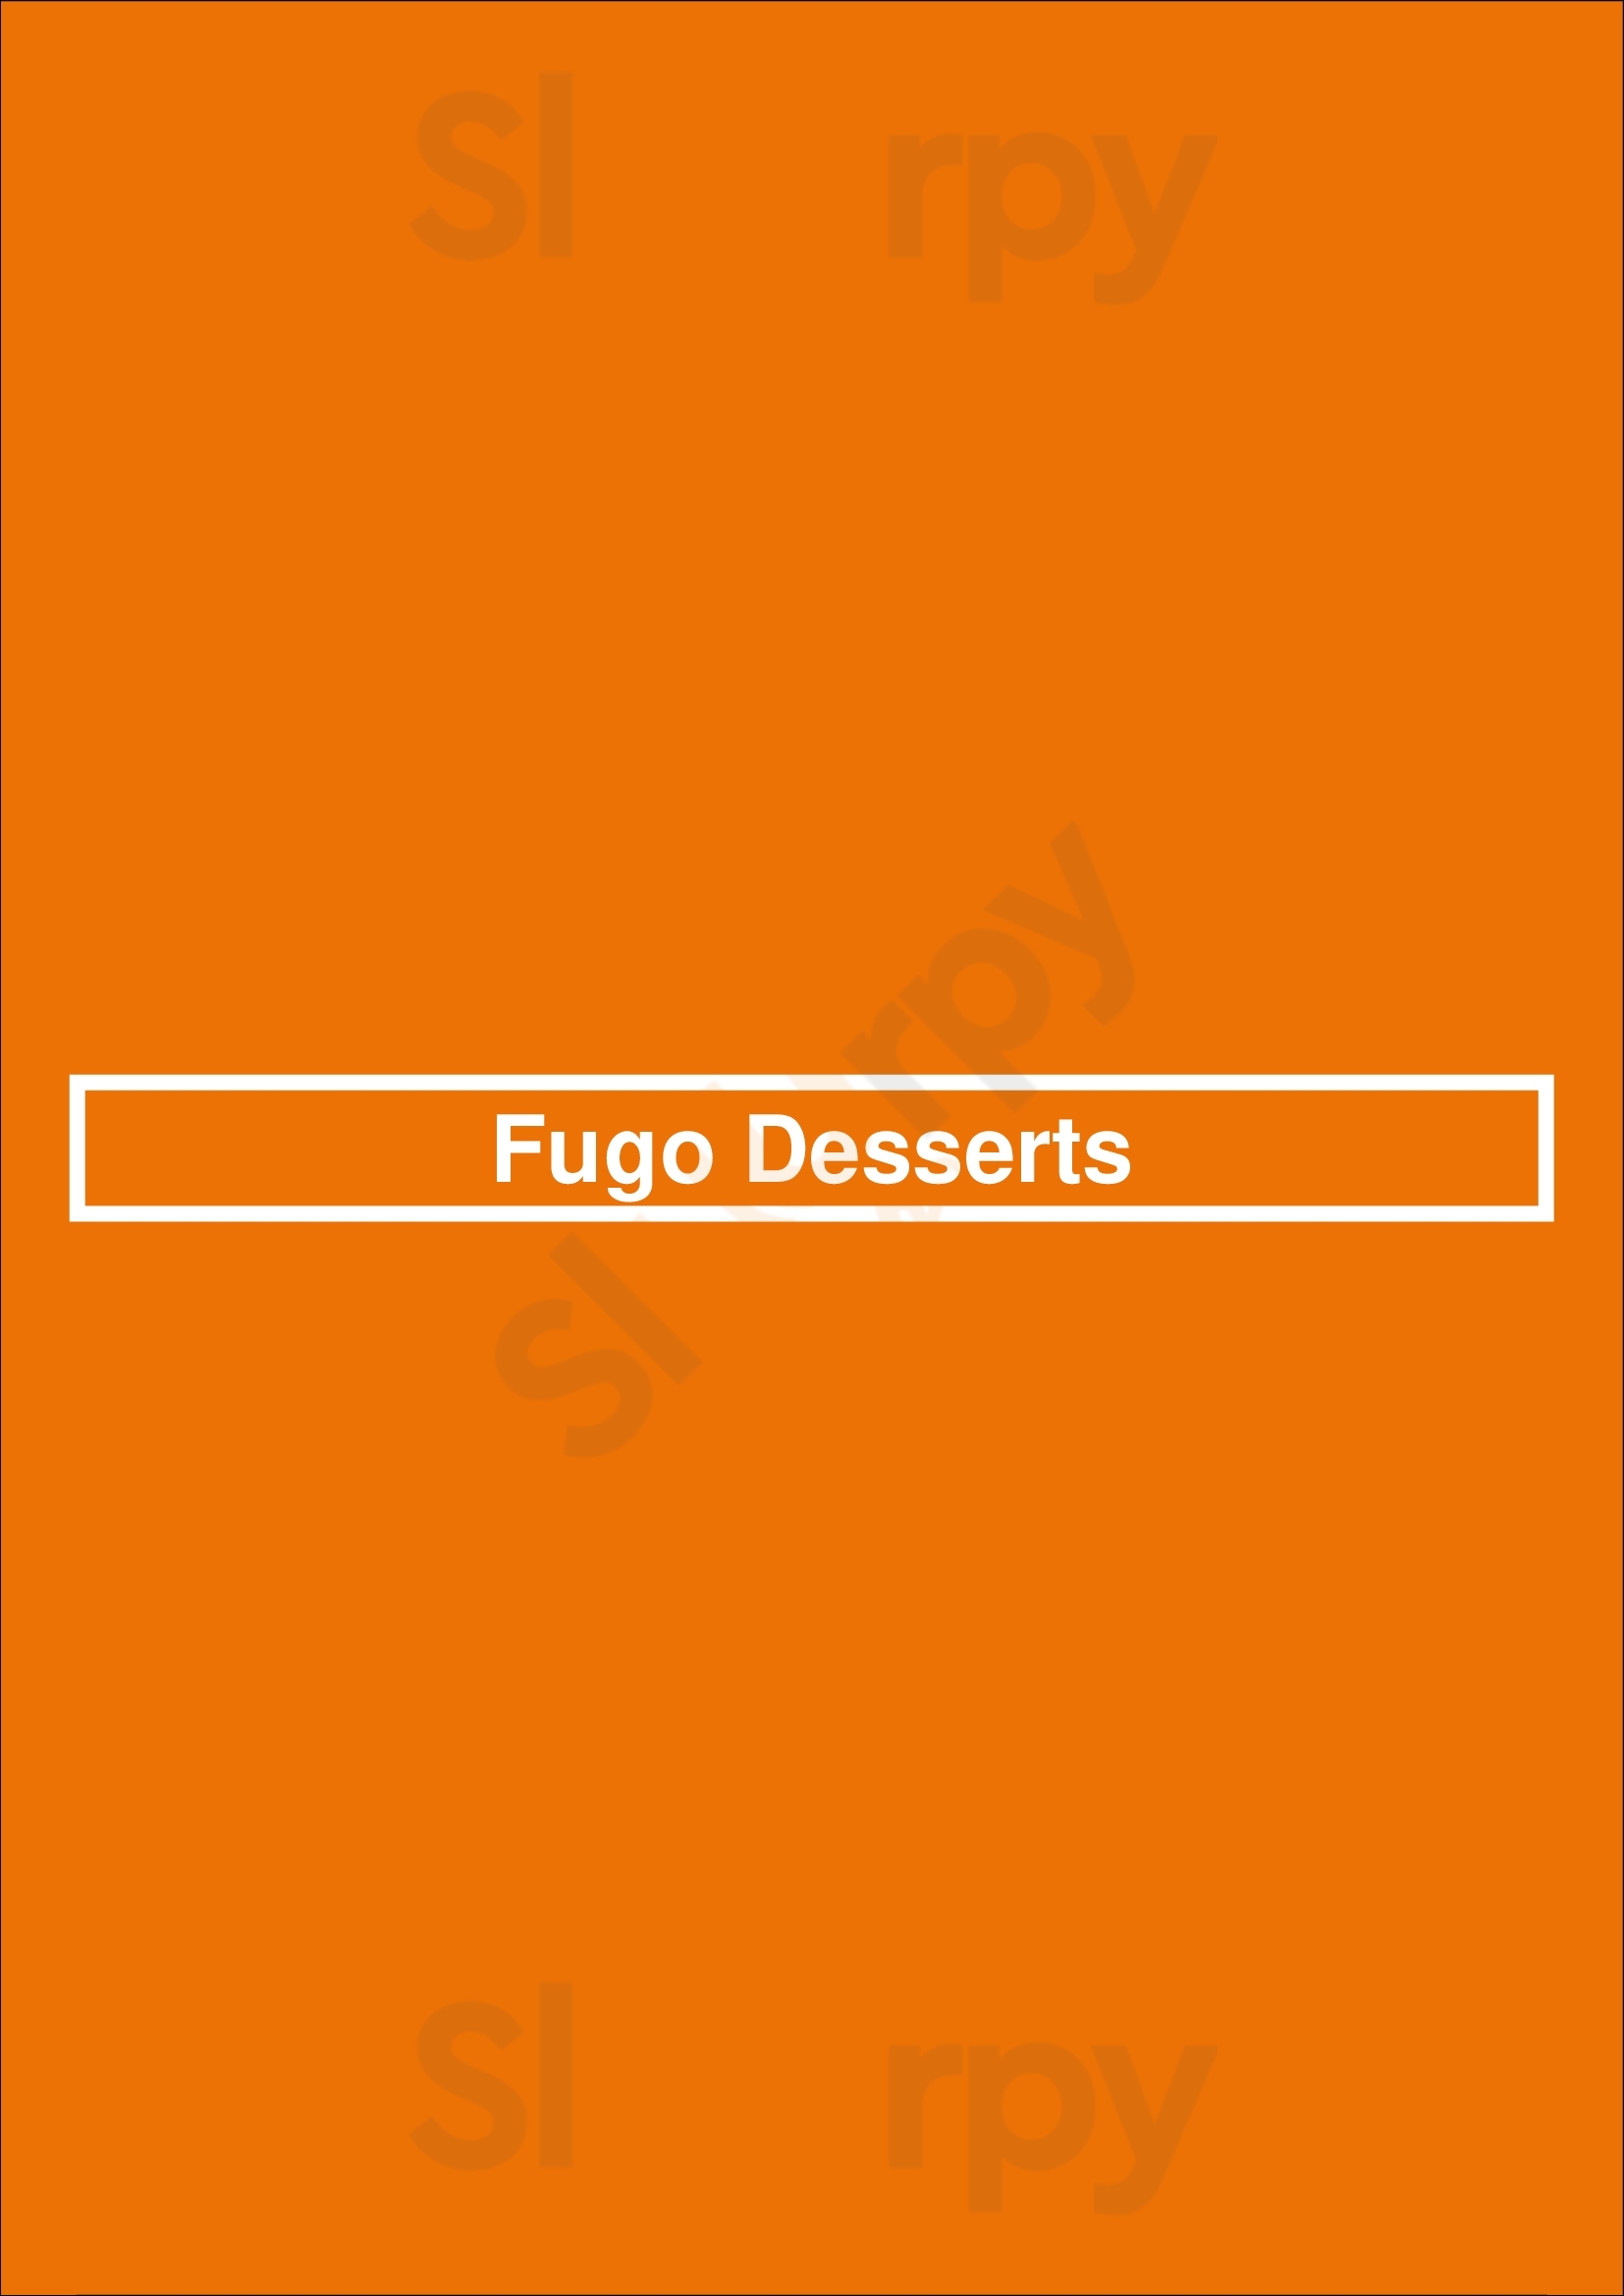 Fugo Desserts Toronto Menu - 1